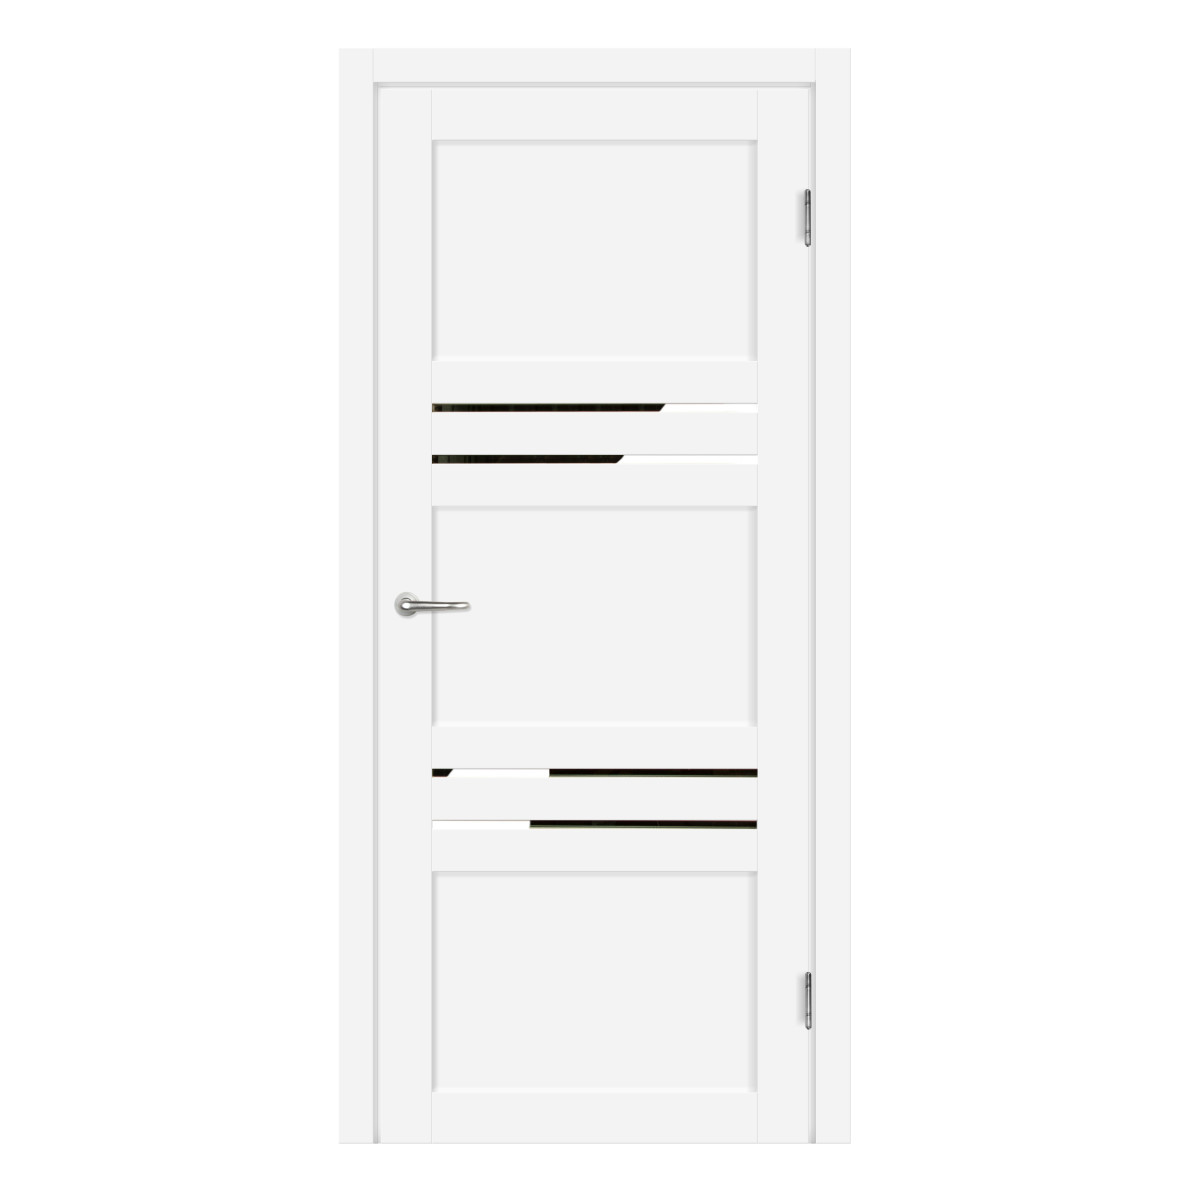 Дверь межкомнатная глухая с замком и петлями в комплекте Artens Флай 80x200 см Hardflex цвет белый